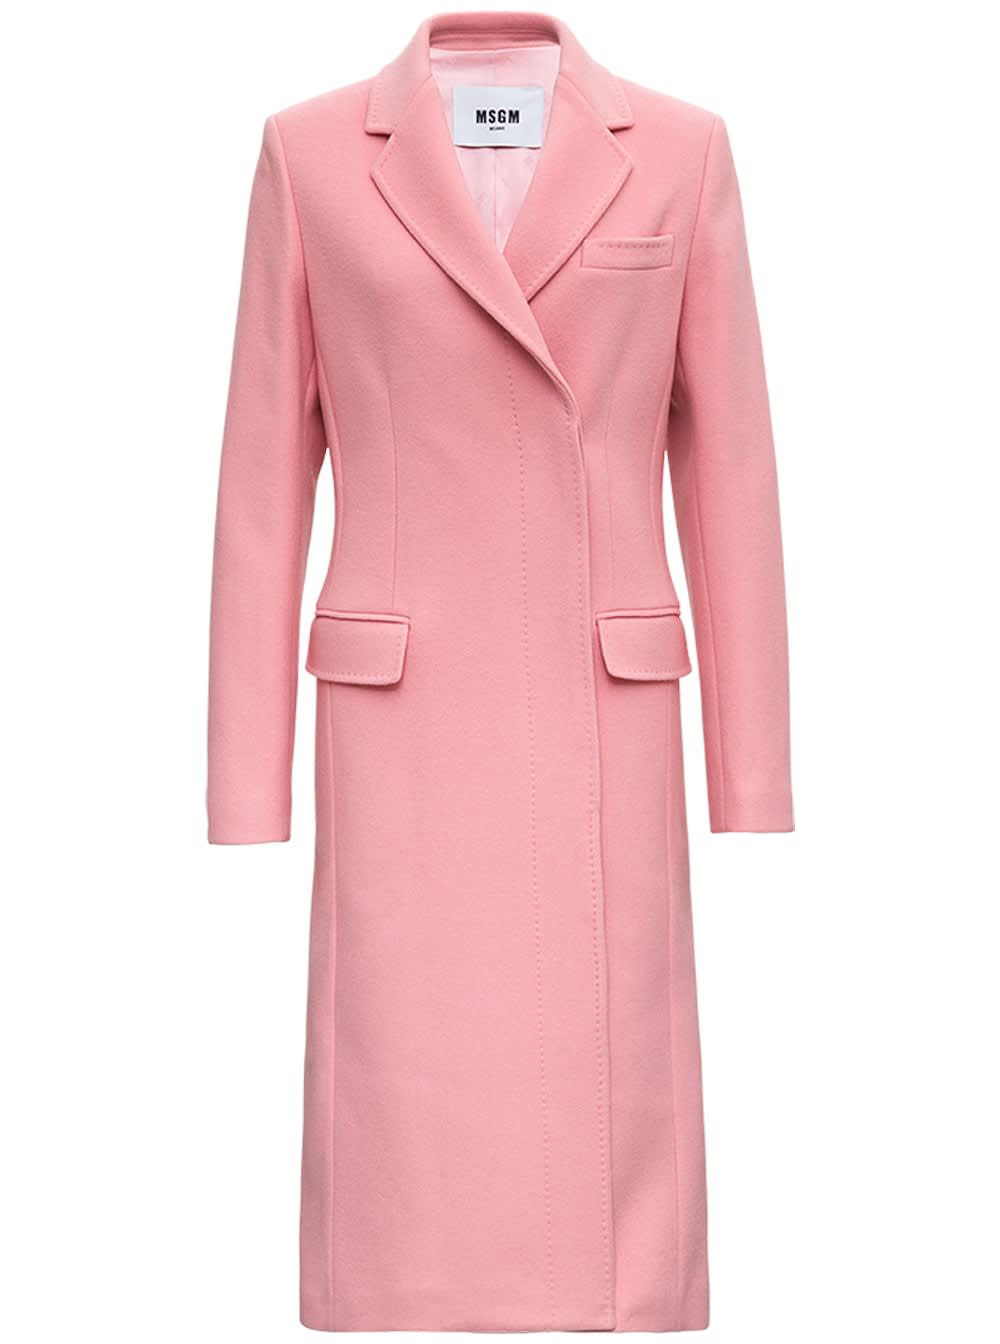 MSGM Pink Wool Long Coat